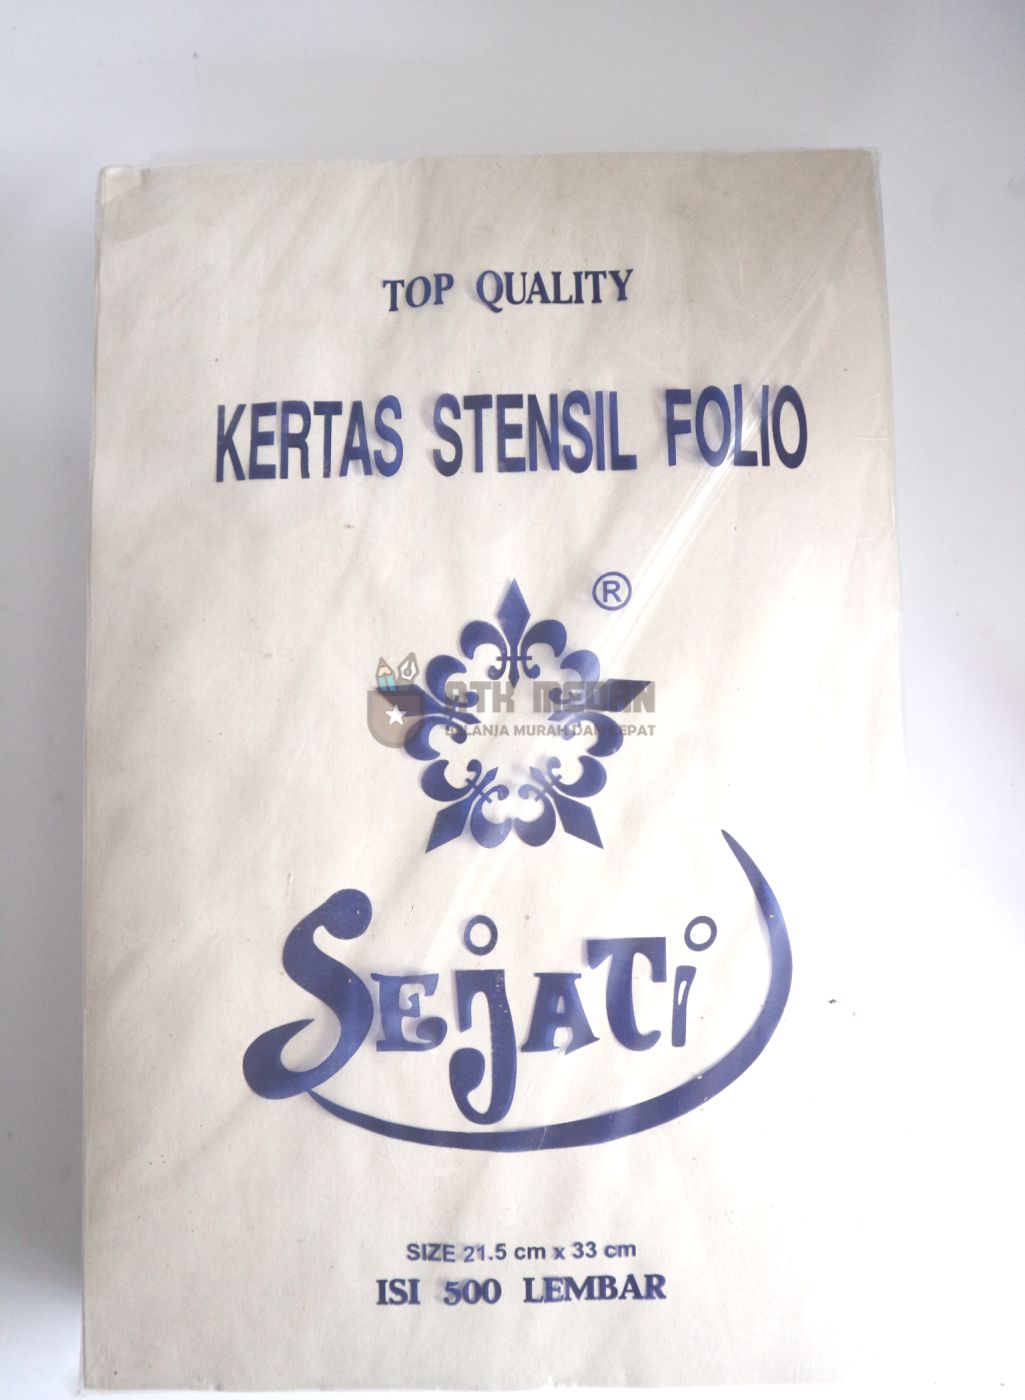 Harga Kertas Stensil Ukuran Folio di Medan - ATK Medan